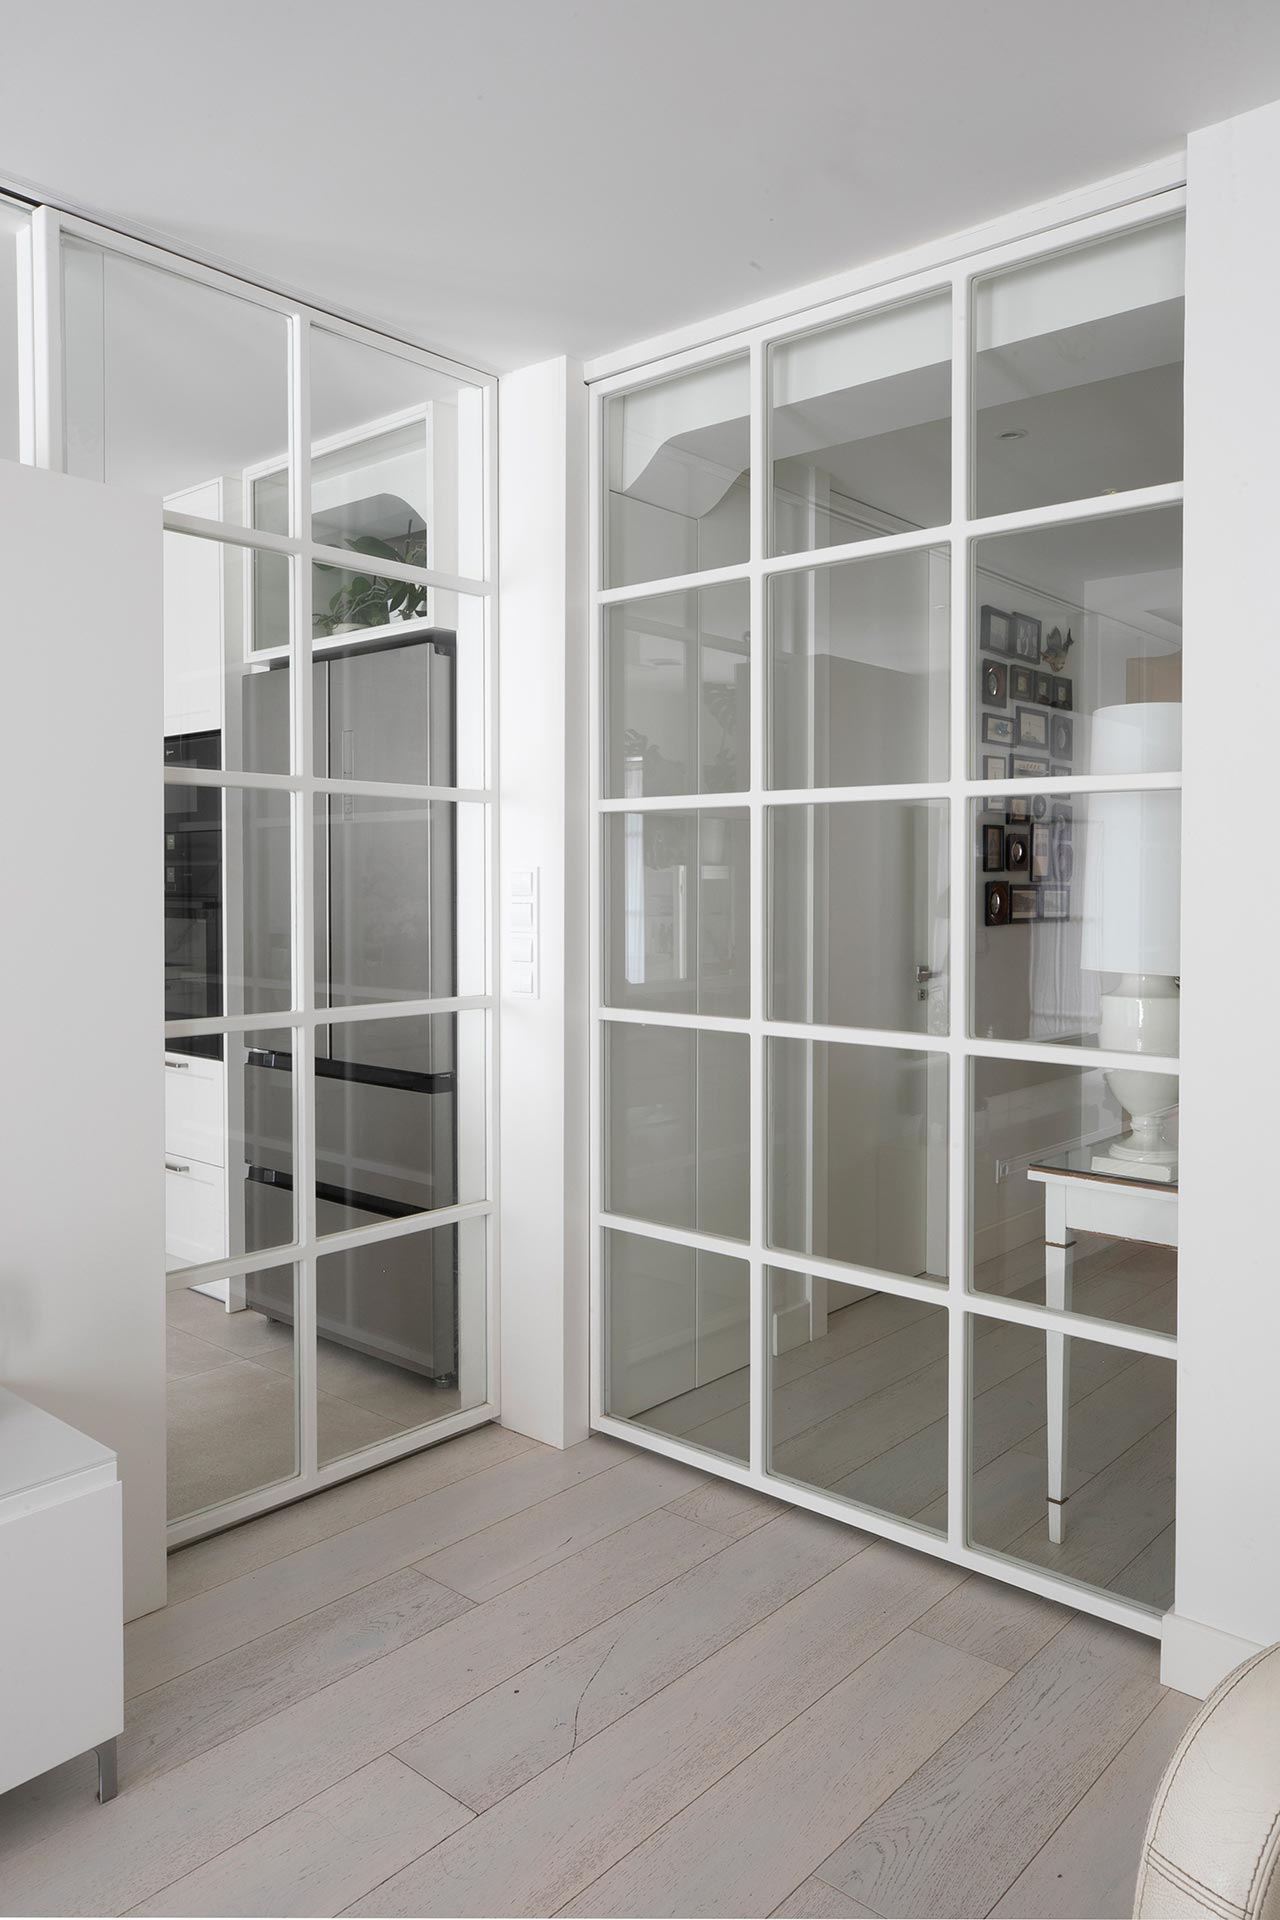 Puertas de cristal con palillería en reforma de vivienda moderna diseñada por Moah Arquitectos en Santander